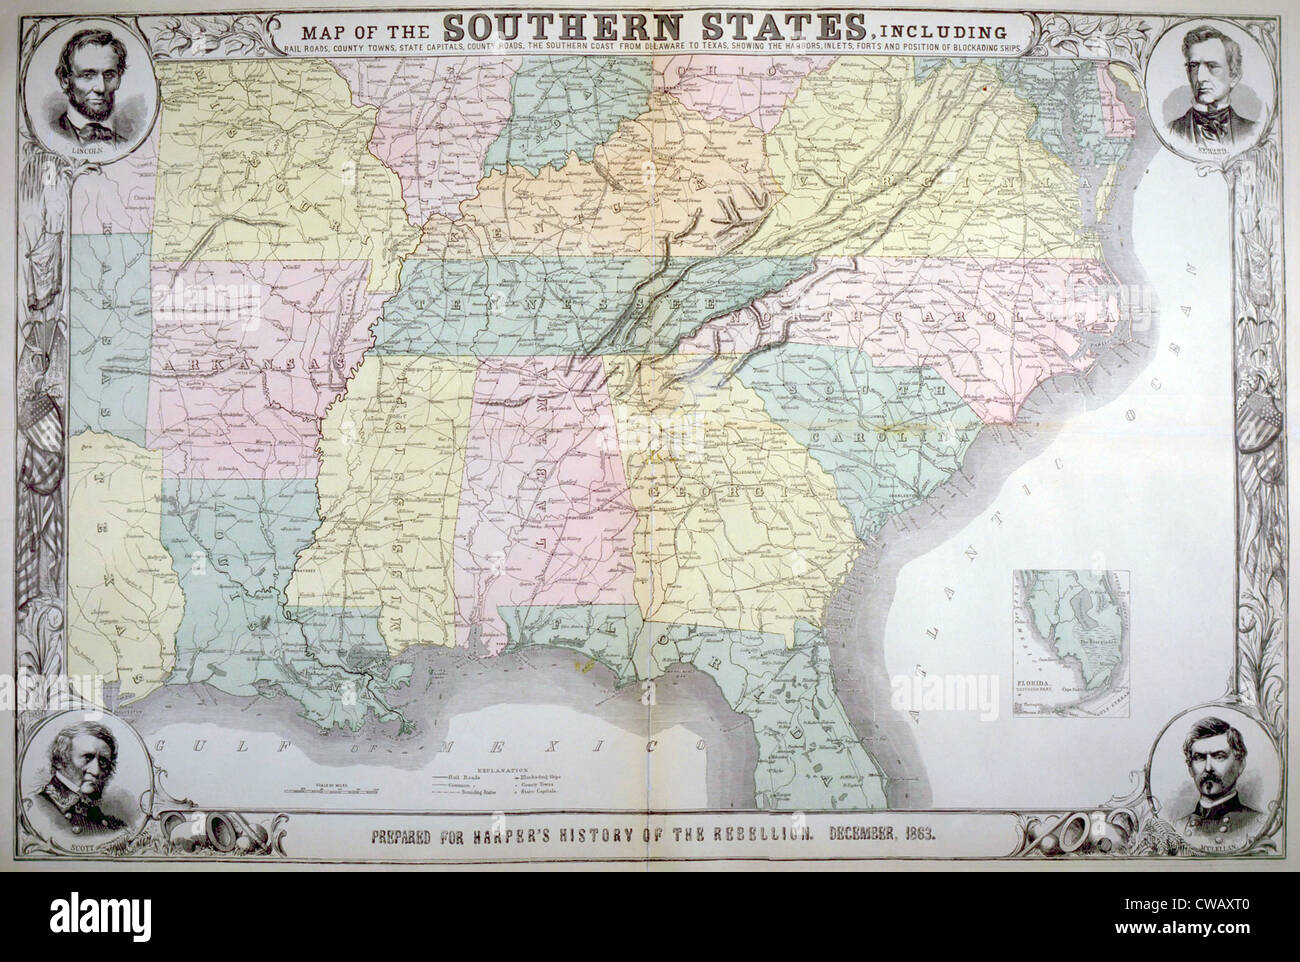 Mappa del sud degli Stati Uniti ha pubblicato per Harper storia pittorica della grande ribellione, Dicembre 1863 Foto Stock